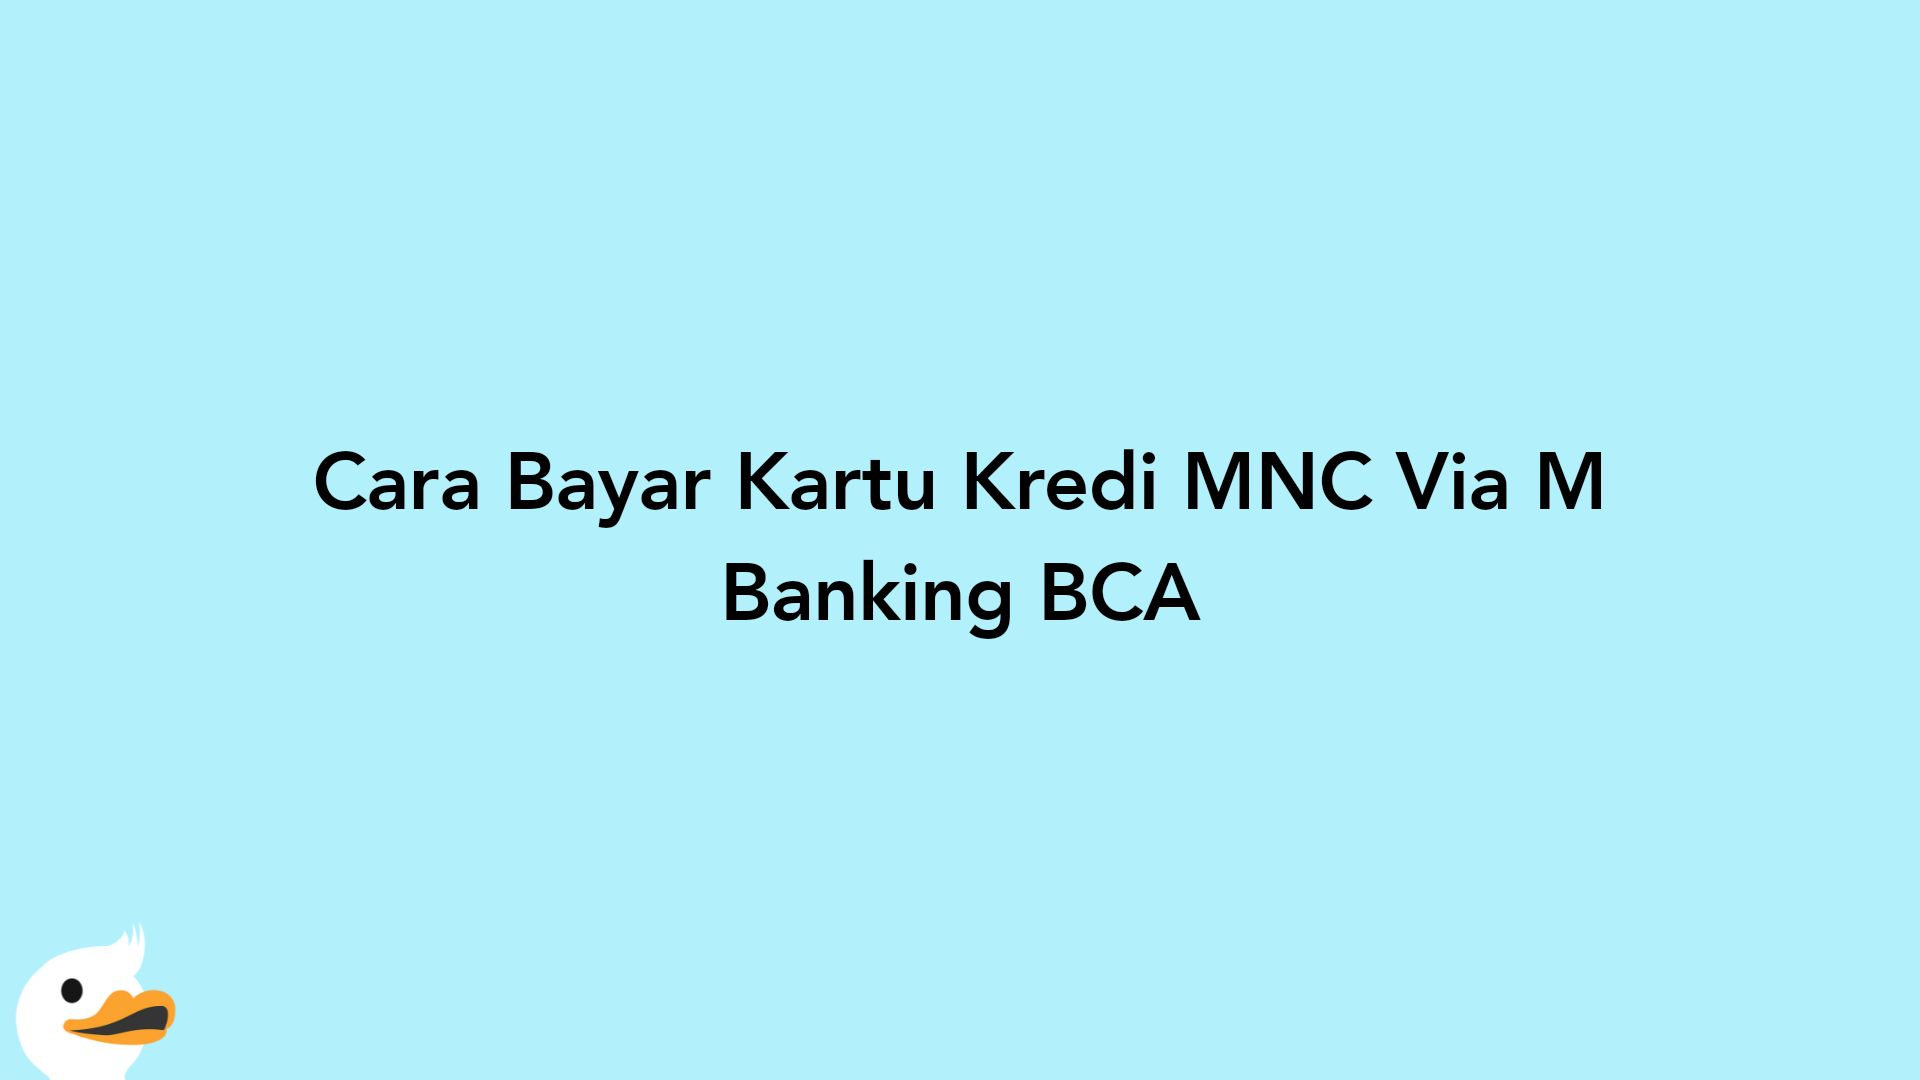 Cara Bayar Kartu Kredi MNC Via M Banking BCA